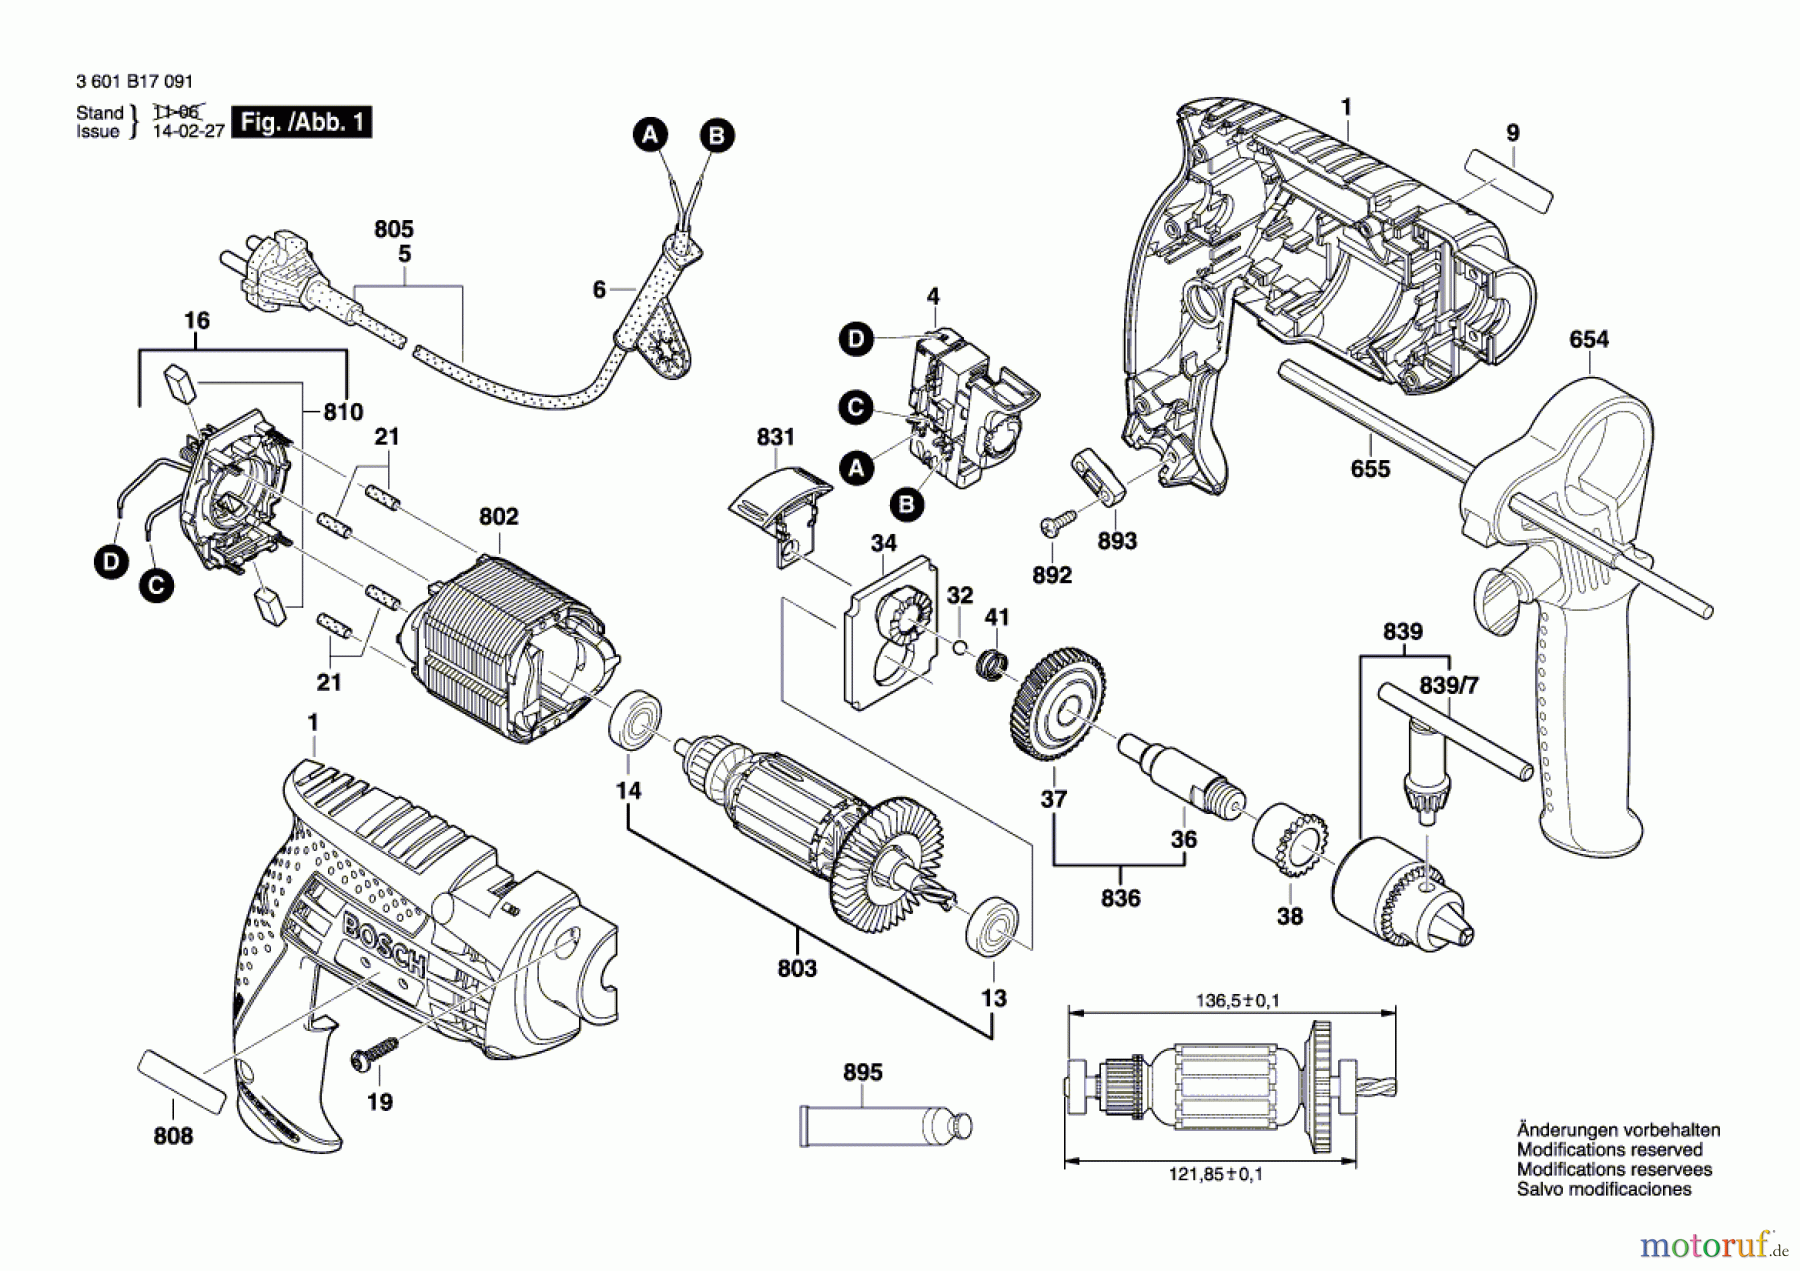  Bosch Werkzeug Schlagbohrmaschine GSB 13 Seite 1